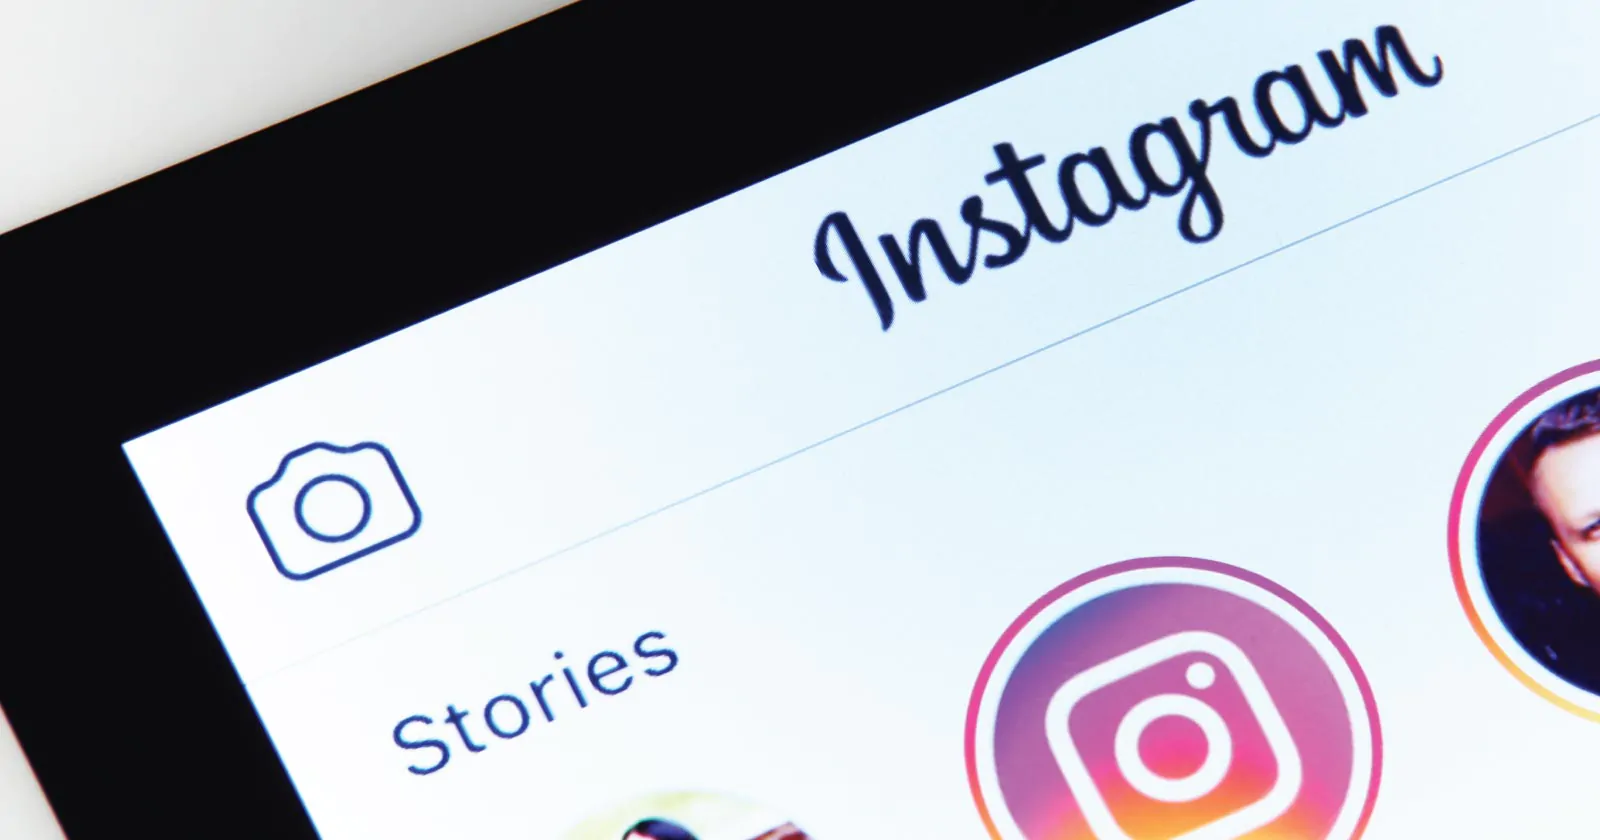 5 Ways to Grow Your Instagram Followers